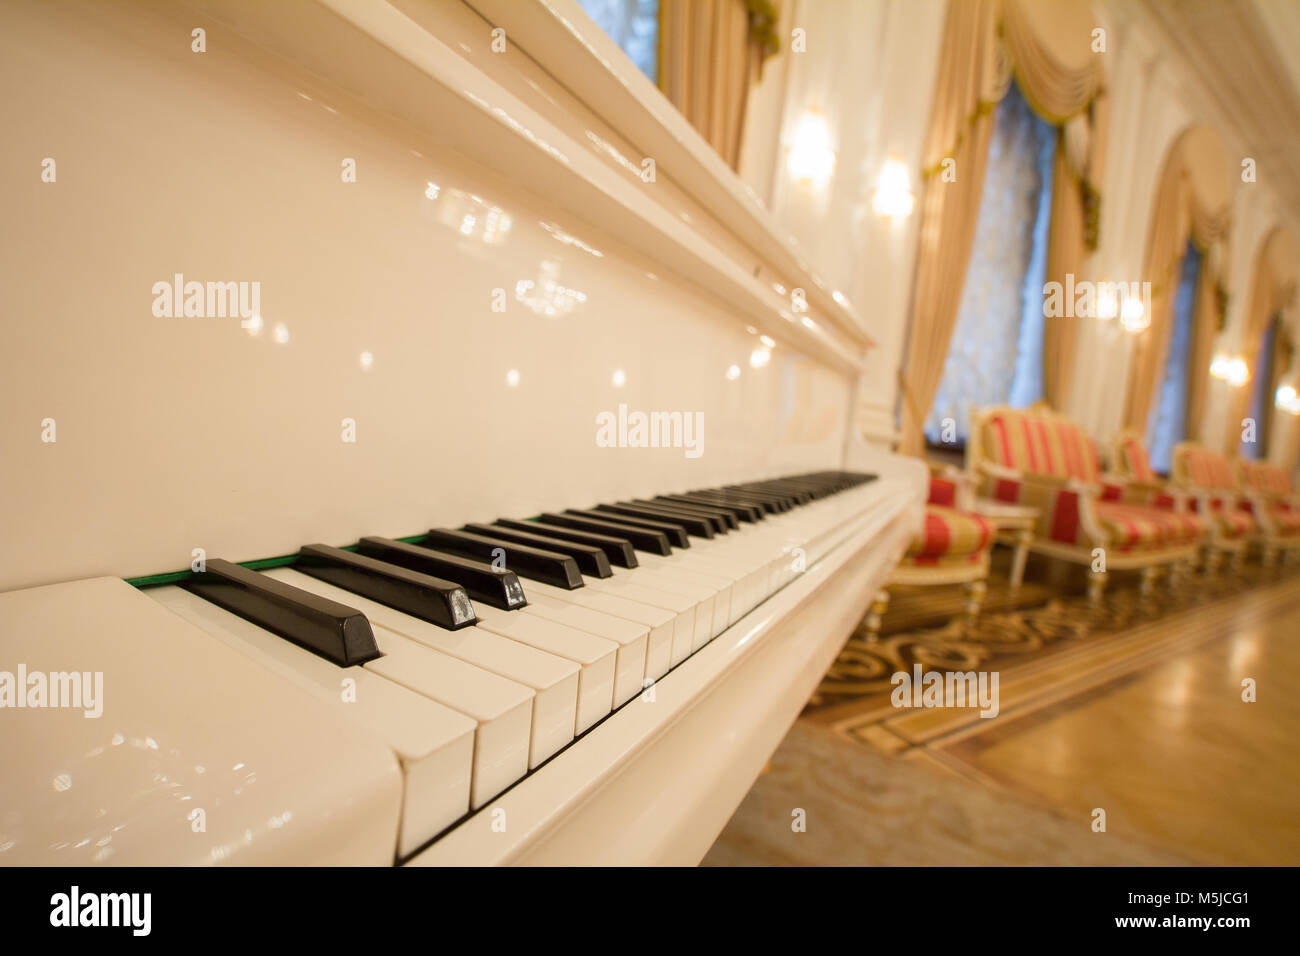 KAZAN, RUSSIE - 16 janvier 2017, à l'Hôtel de Ville - piano - touches blanches et noires. Bal de luxe d'or Banque D'Images